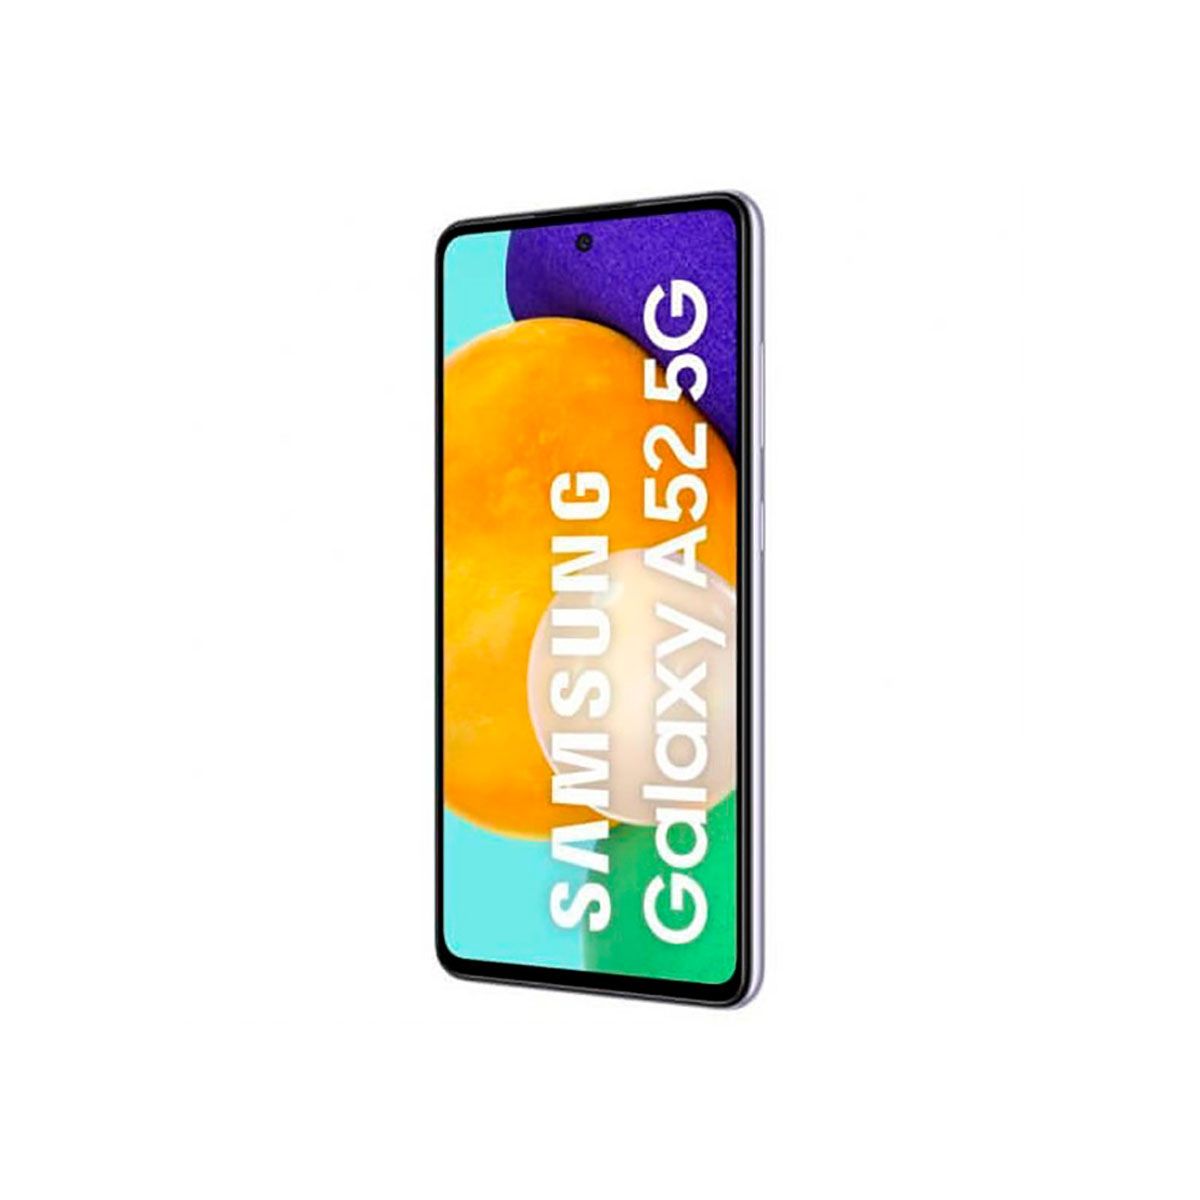 Samsung Galaxy A52 5G 6GB/128GB Lila (Awesome Violet) Dual SIM A526B